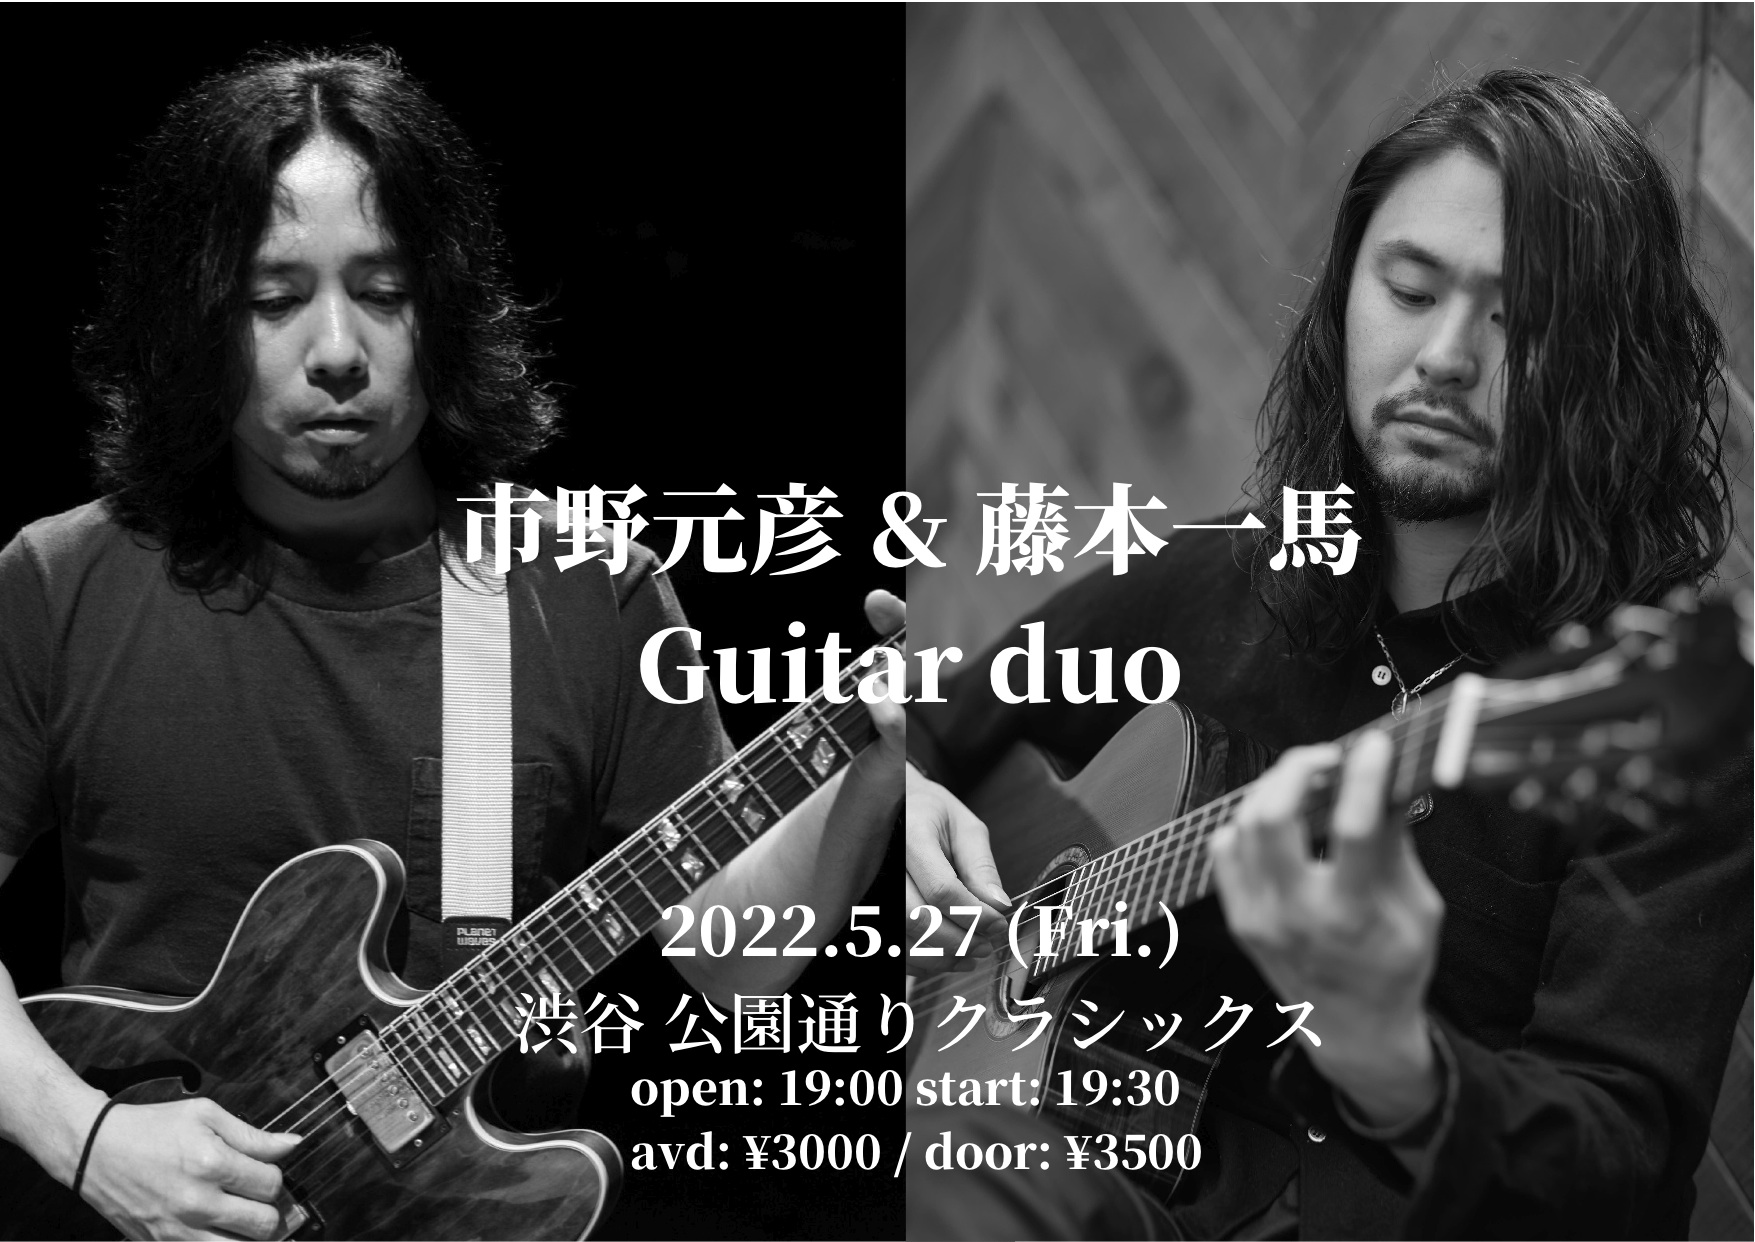 「市野元彦 & 藤本一馬 Guitar duo」